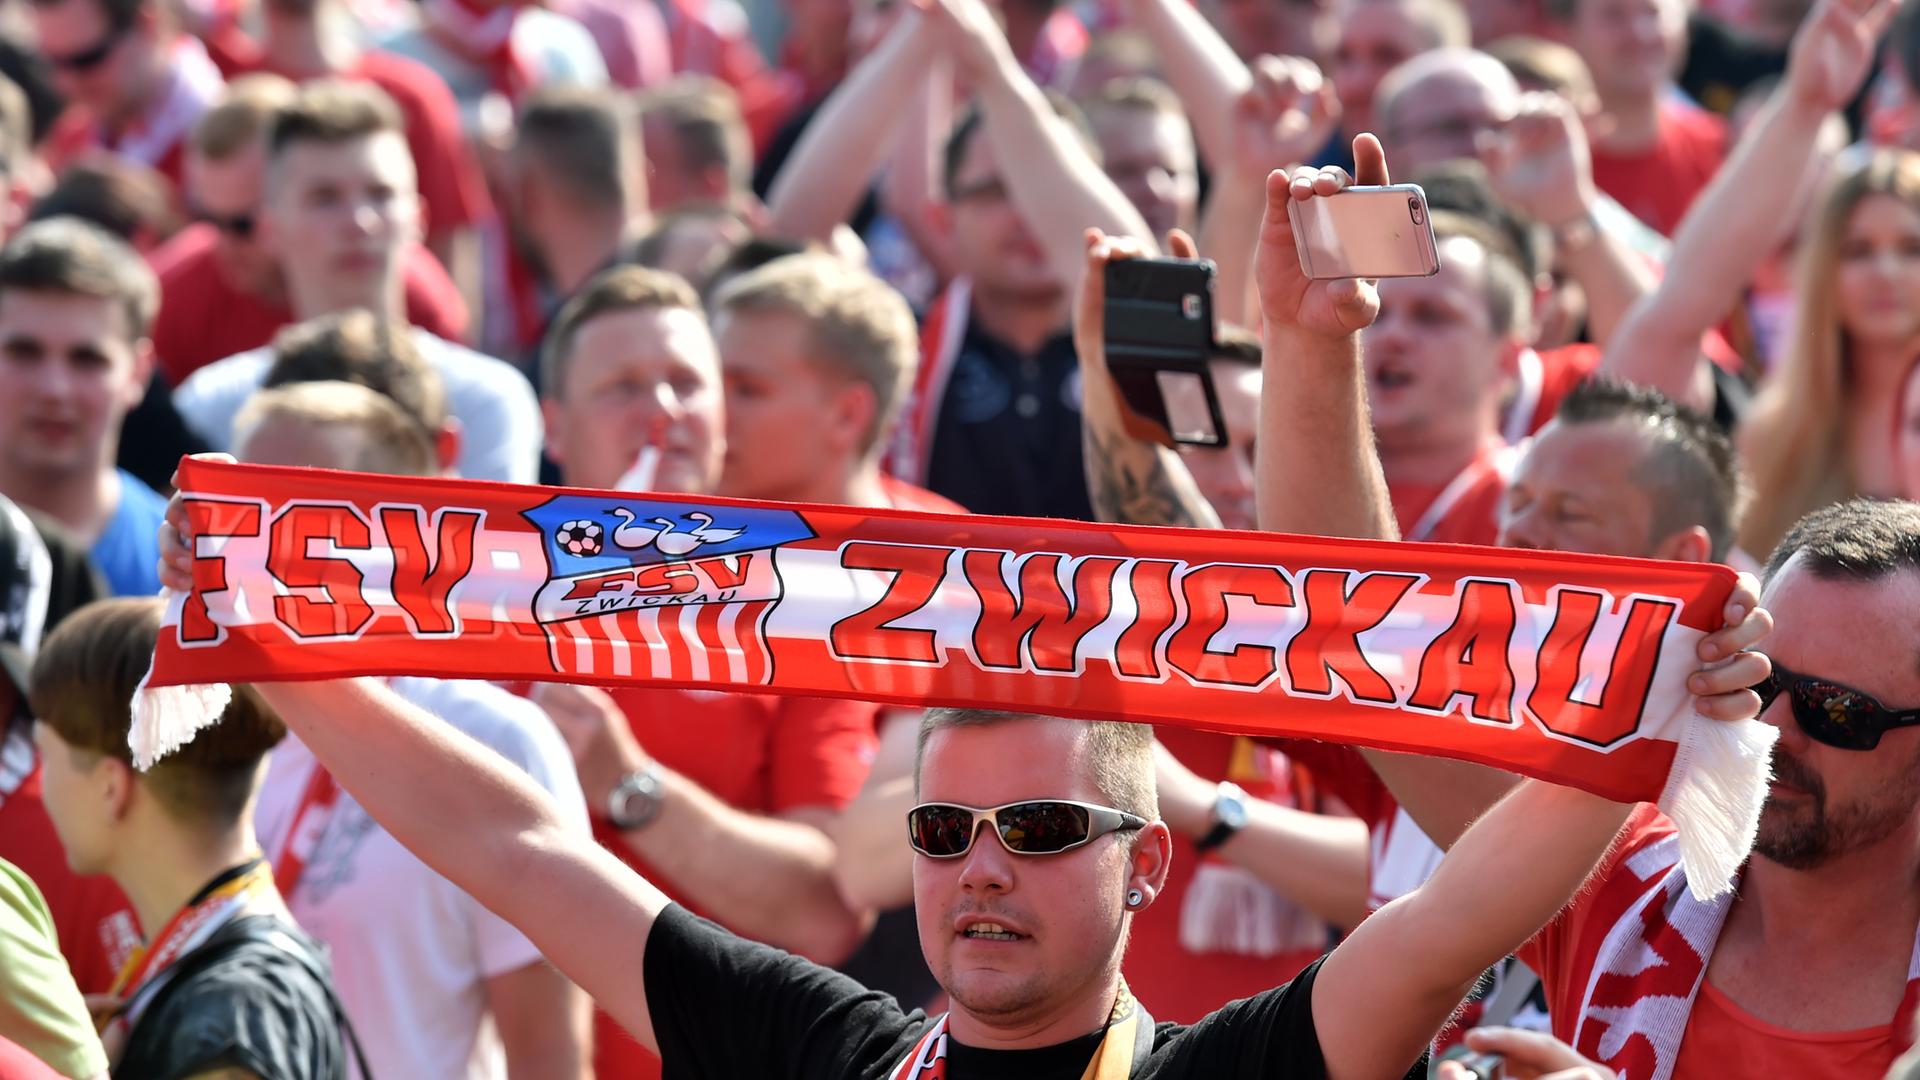 Fußballfans des FSV Zwickau. Ein Fan mit Sonnenbrille hält einen Schal mit der Aufschrift "FSV Zwickau" hoch.